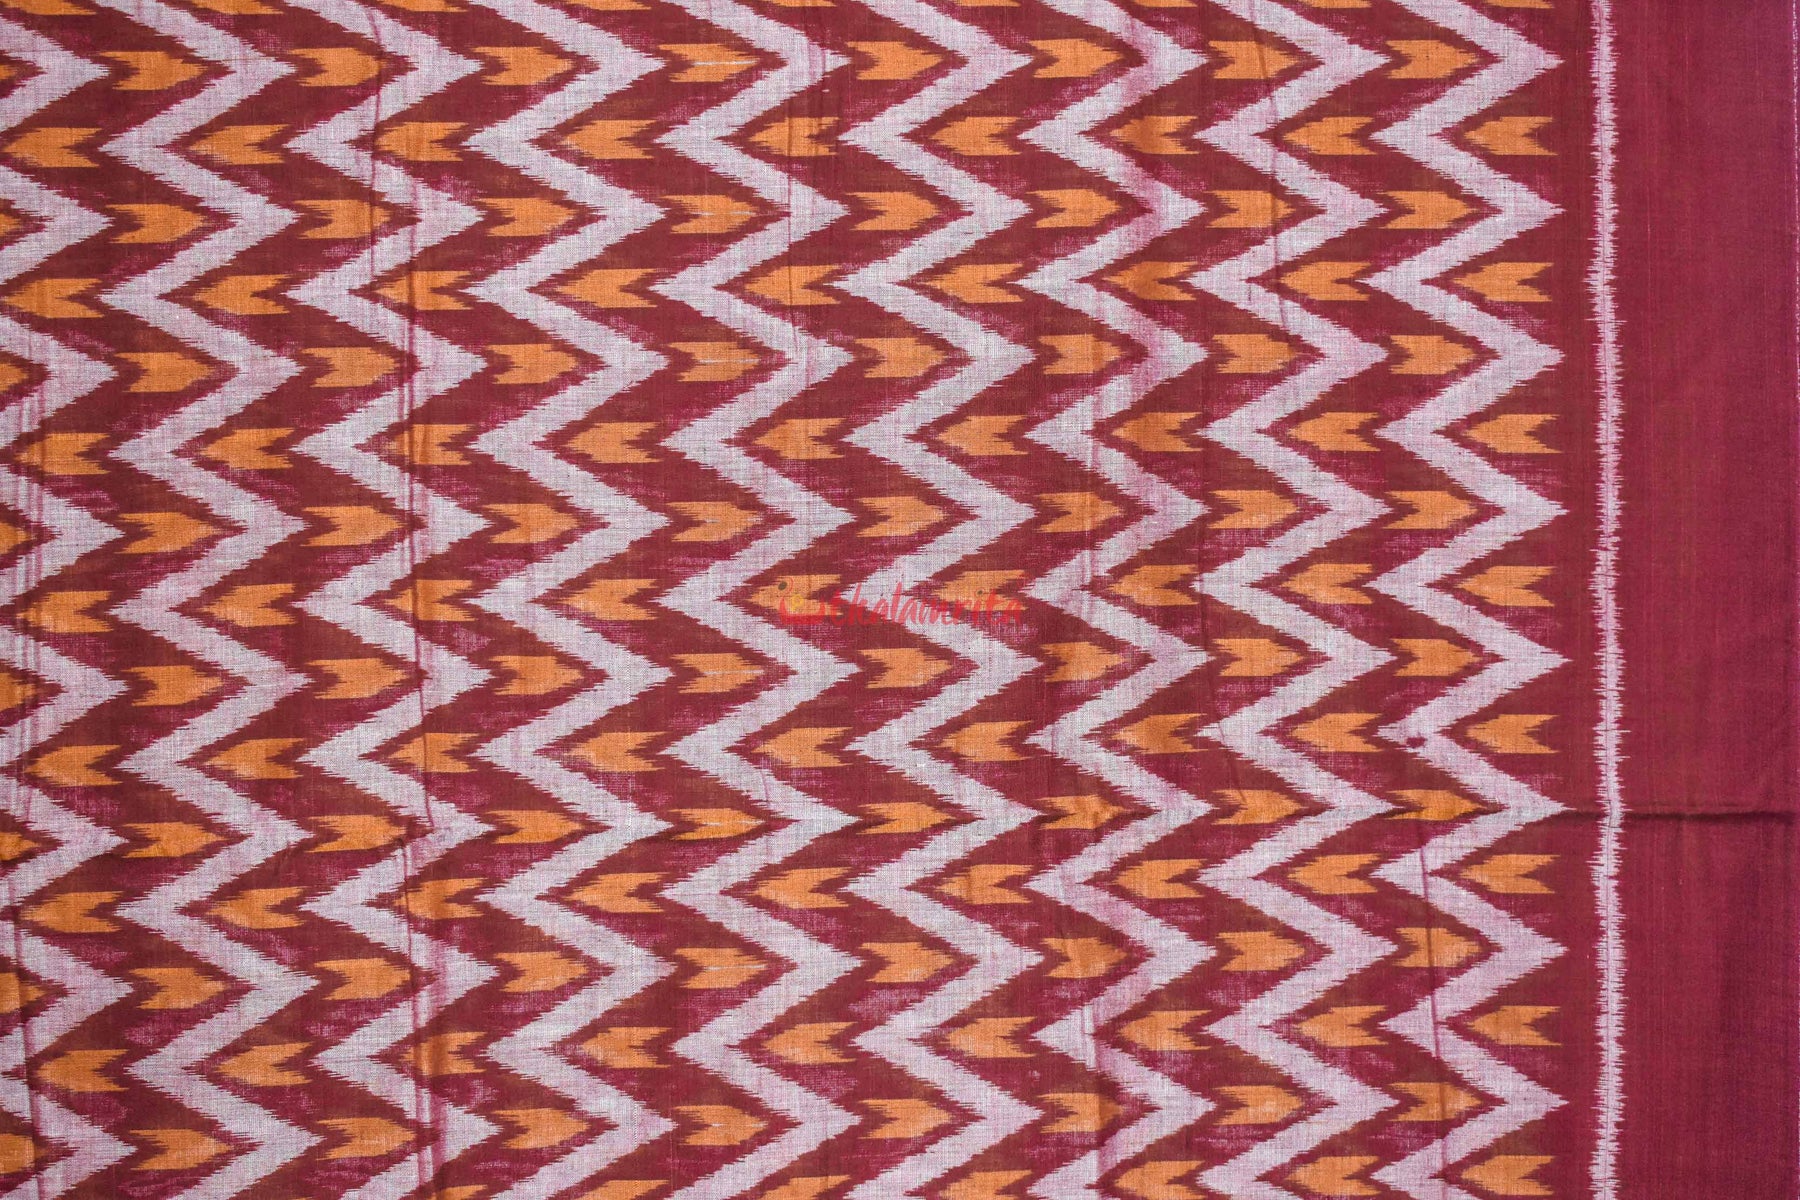 Maroon Waves (Fabric)